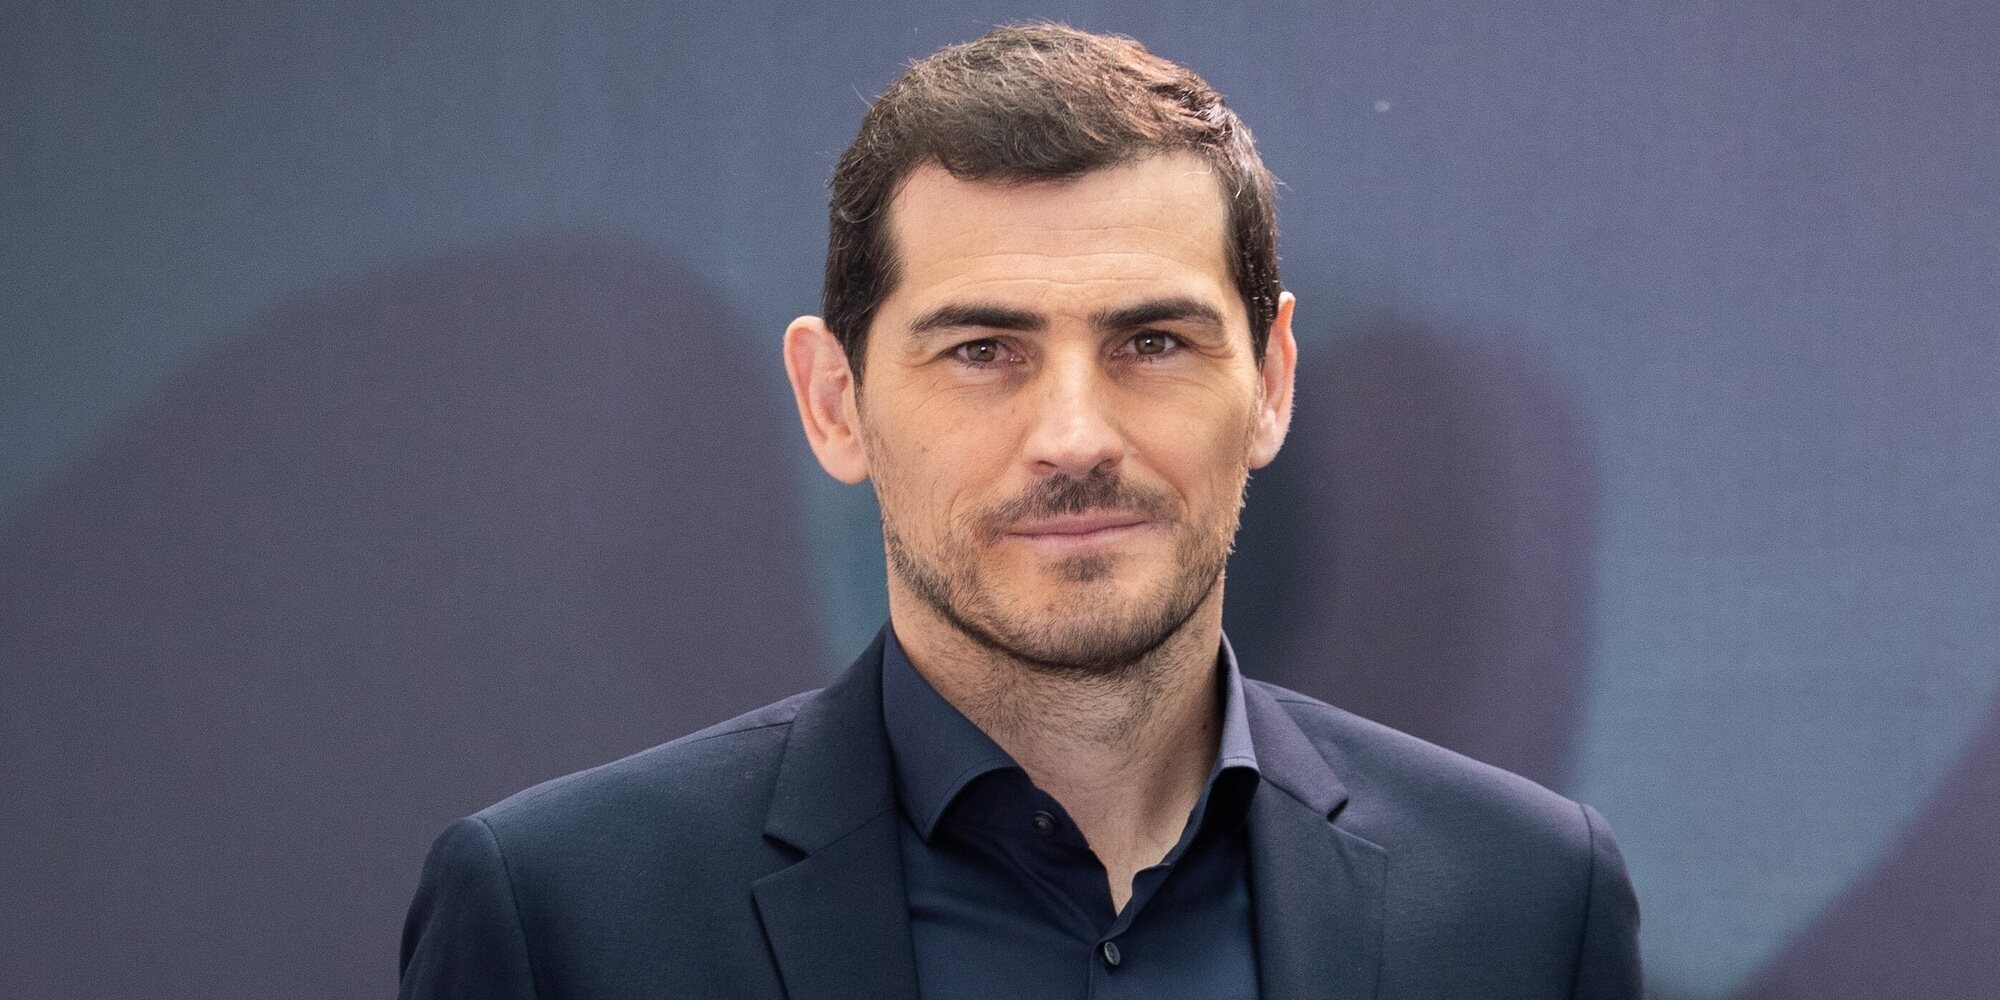 Iker Casillas reacciona a su supuesta relación con Rocío Osorno: "Ave María Purísima"